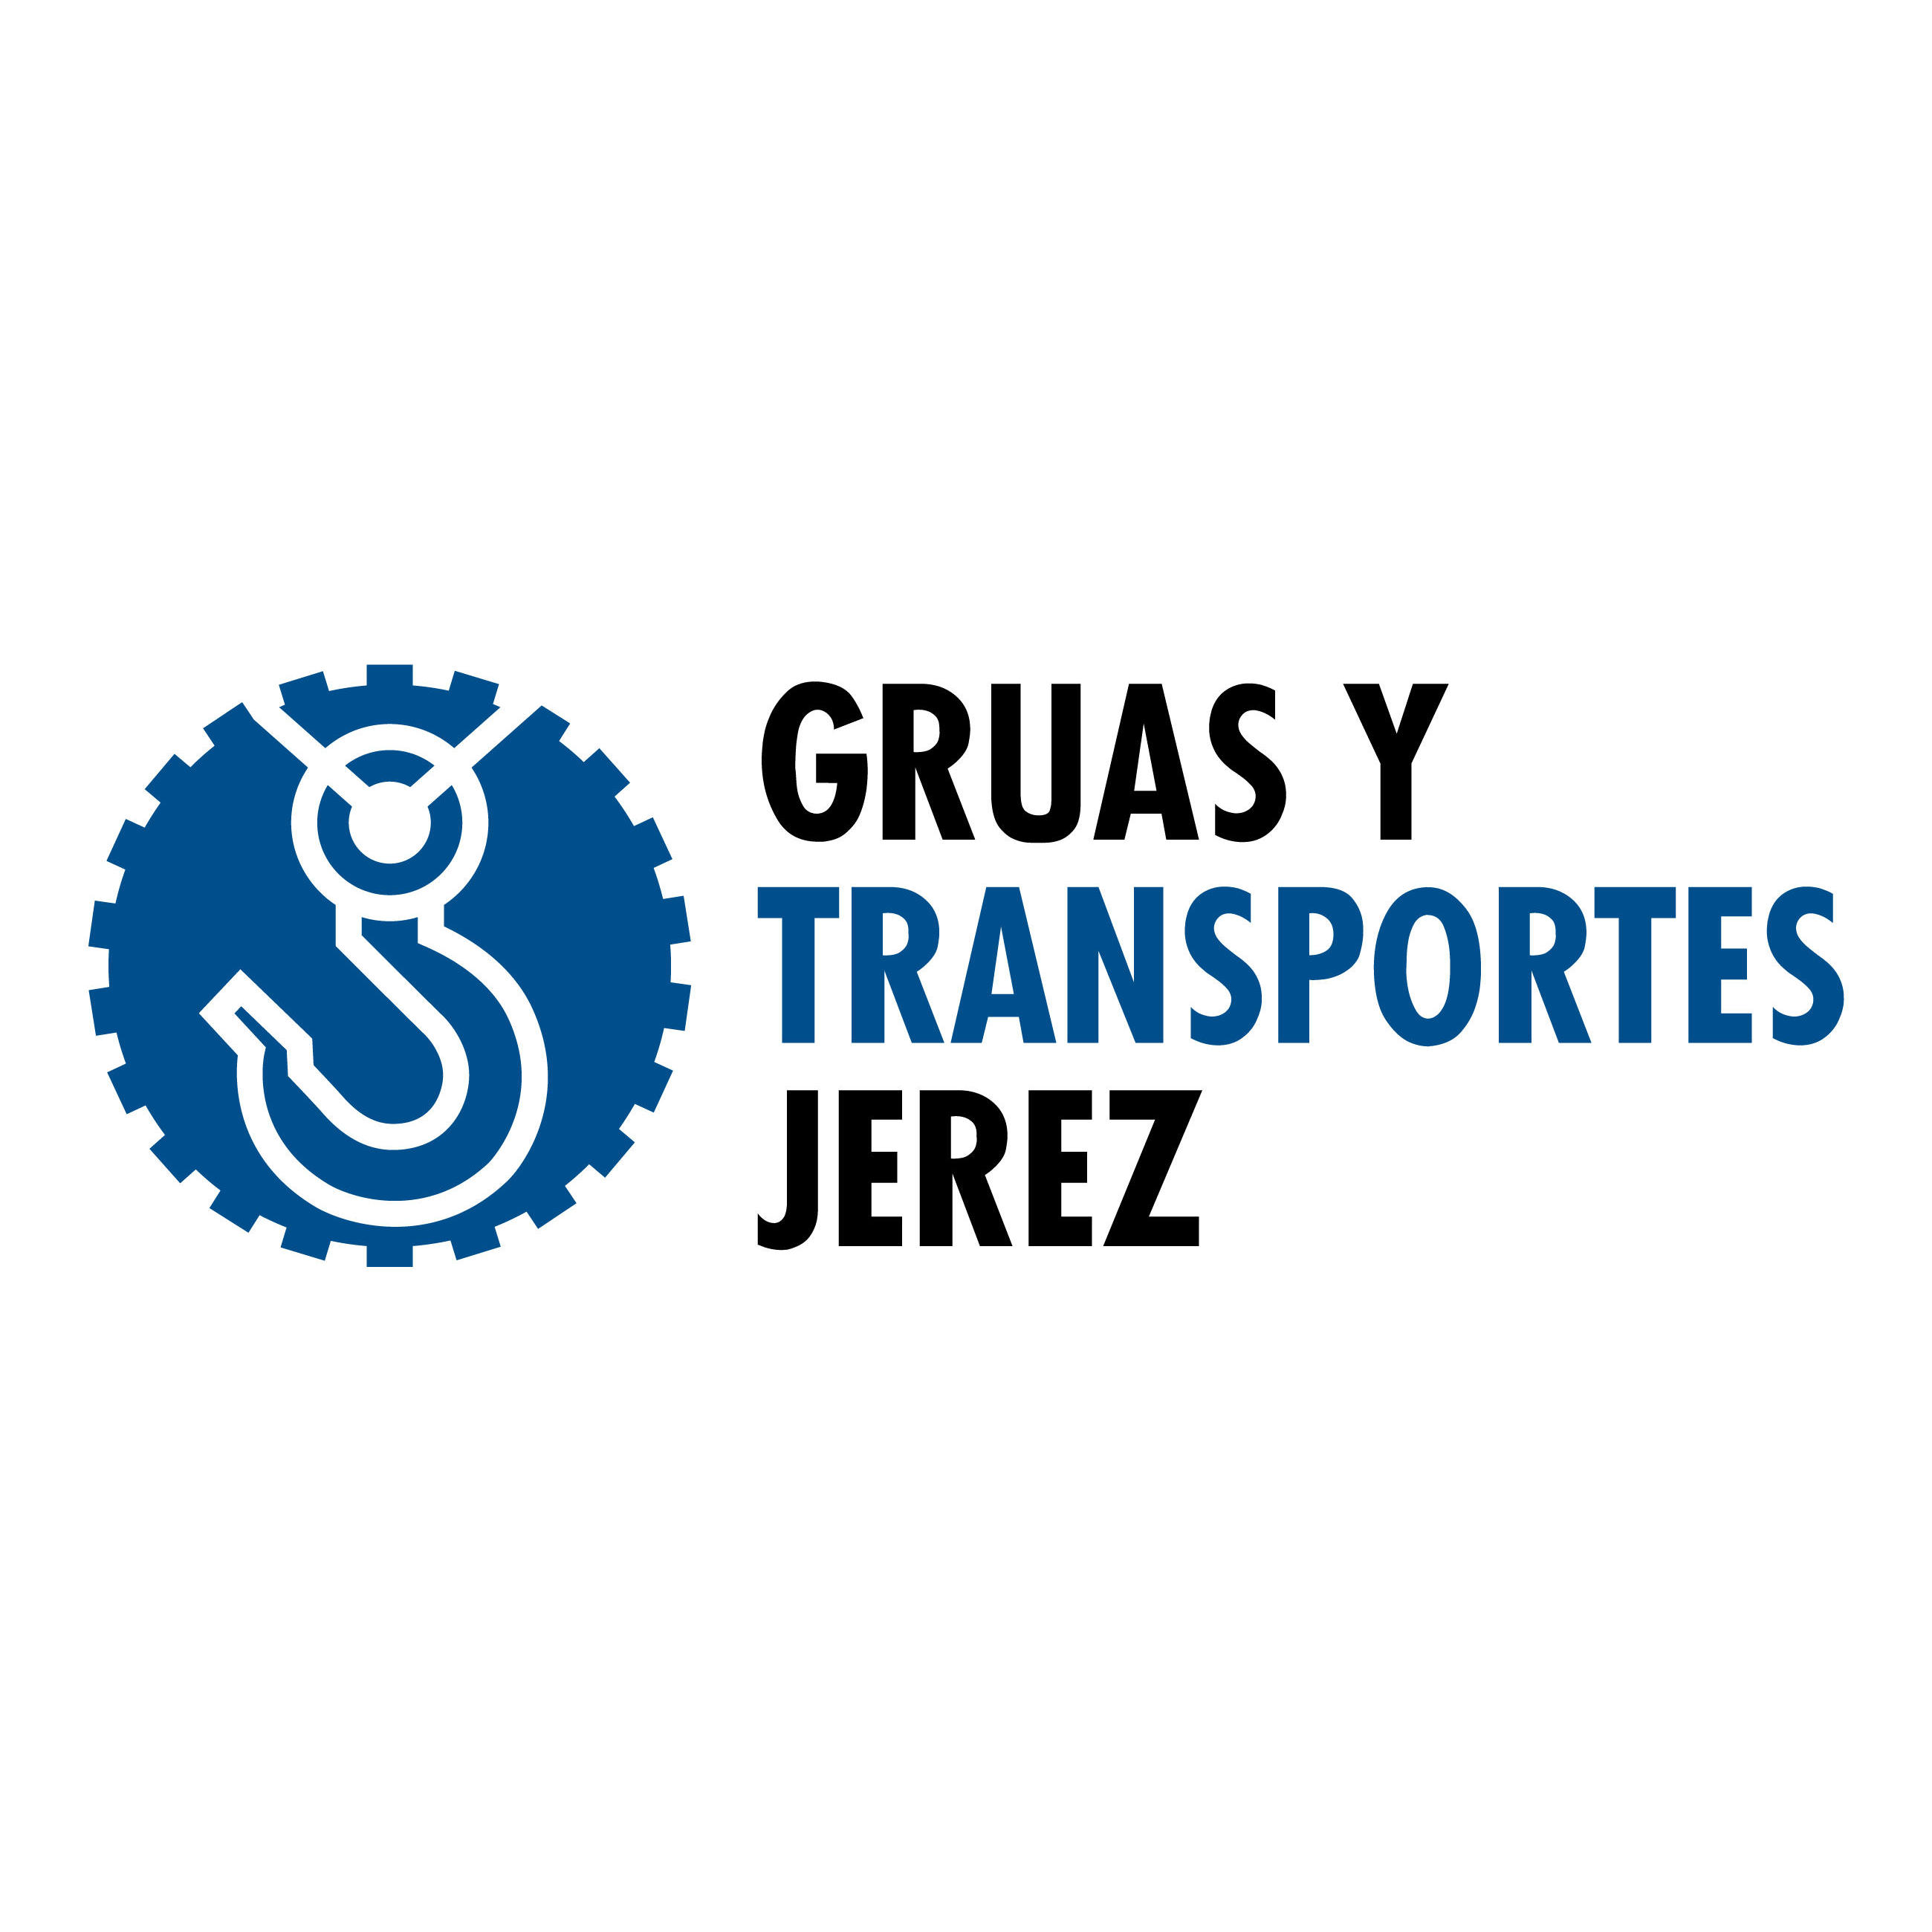 Grúas Y Transportes Jerez S.L. - Crane Rental Agency - Jerez de la Frontera - 956 30 29 10 Spain | ShowMeLocal.com